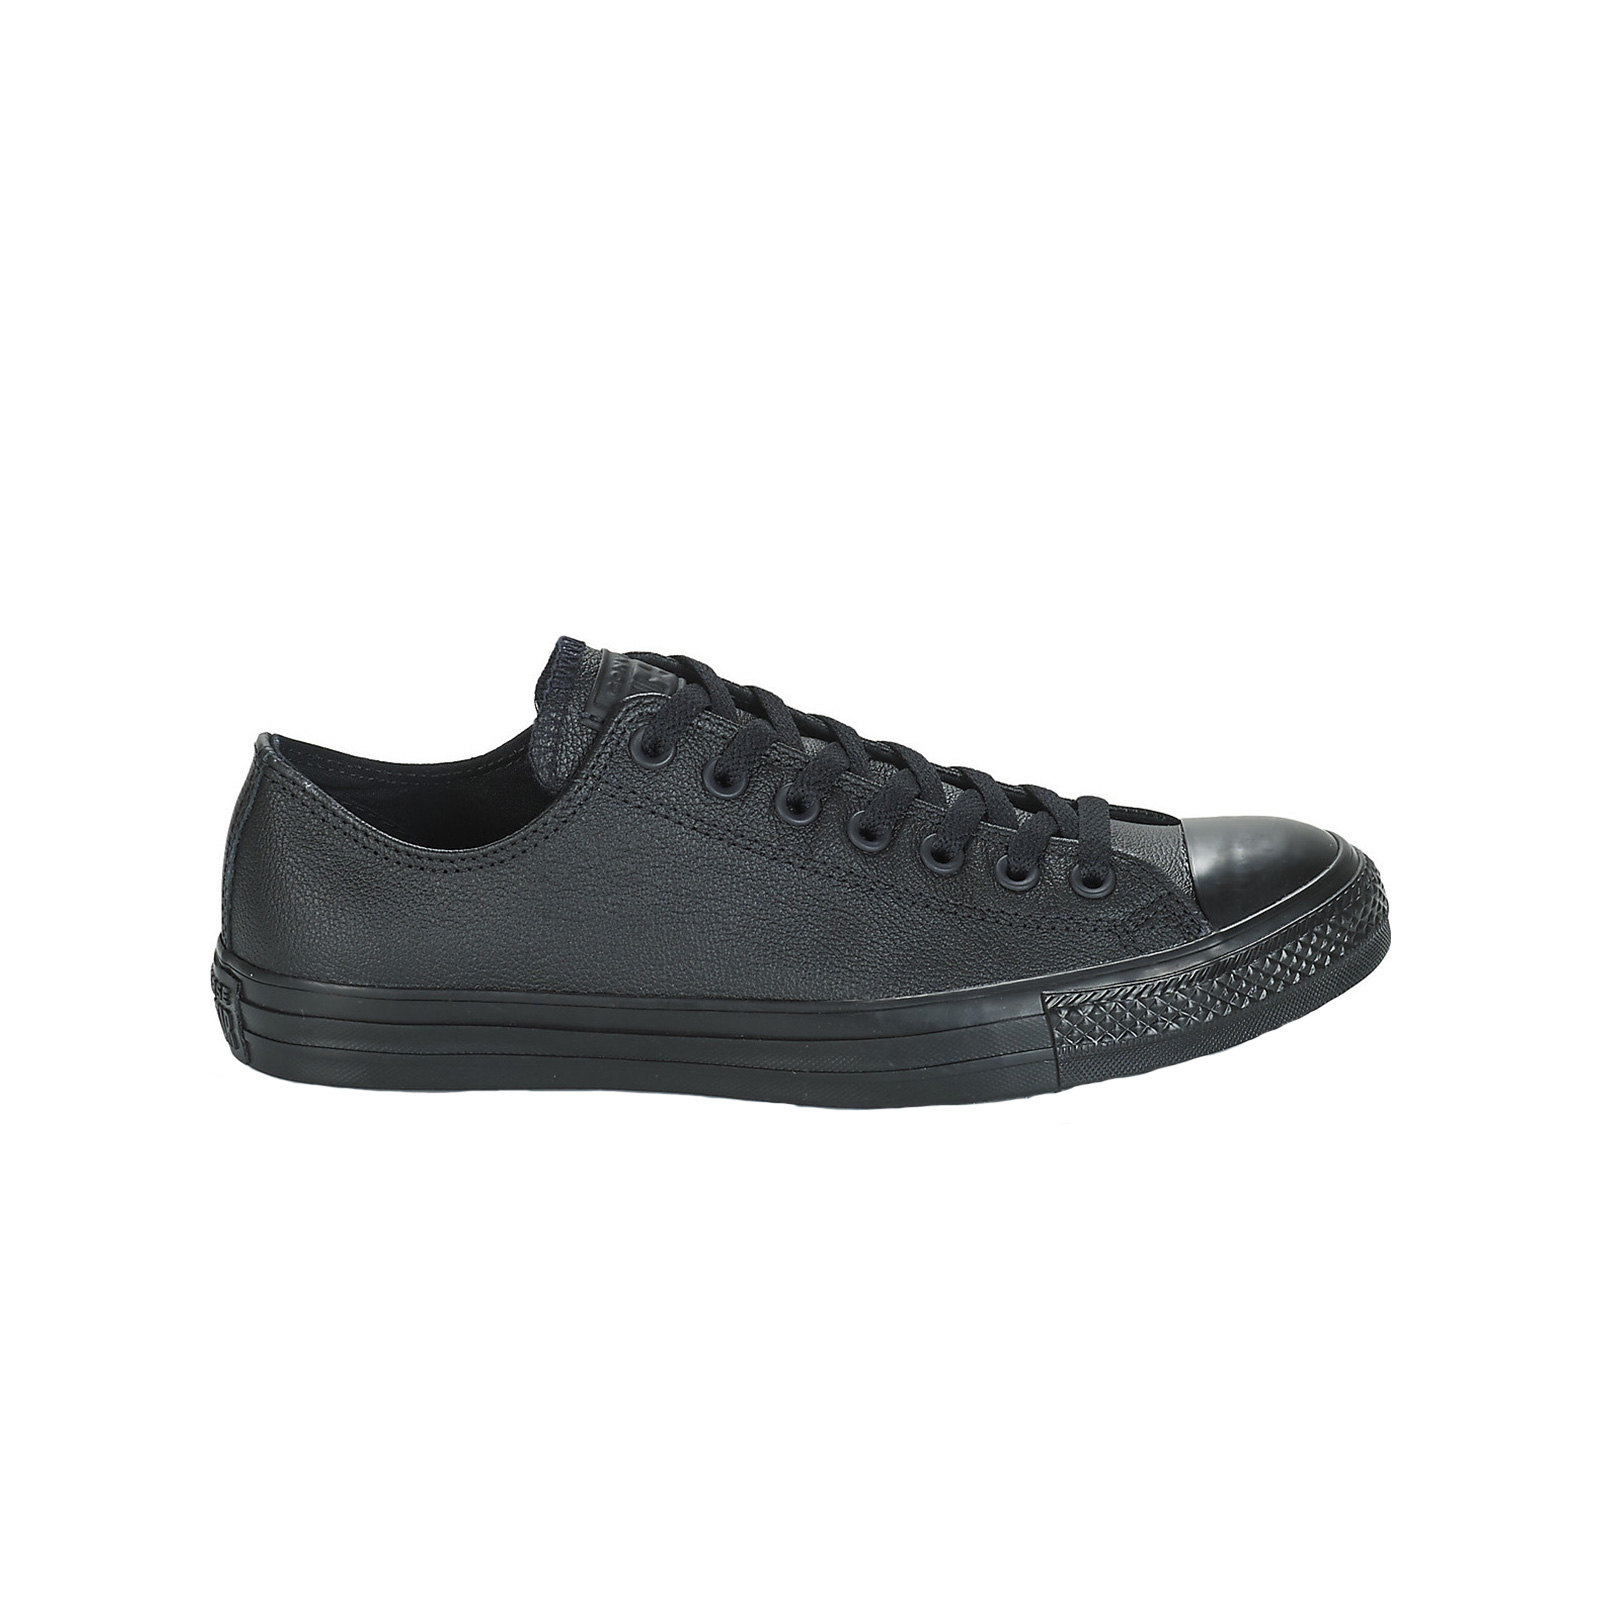 Ανδρικά > Παπούτσια > Sneaker > Παπούτσι Low Cut Converse - CHUCK TAYLOR ALL STAR - 001-BLACK MONO